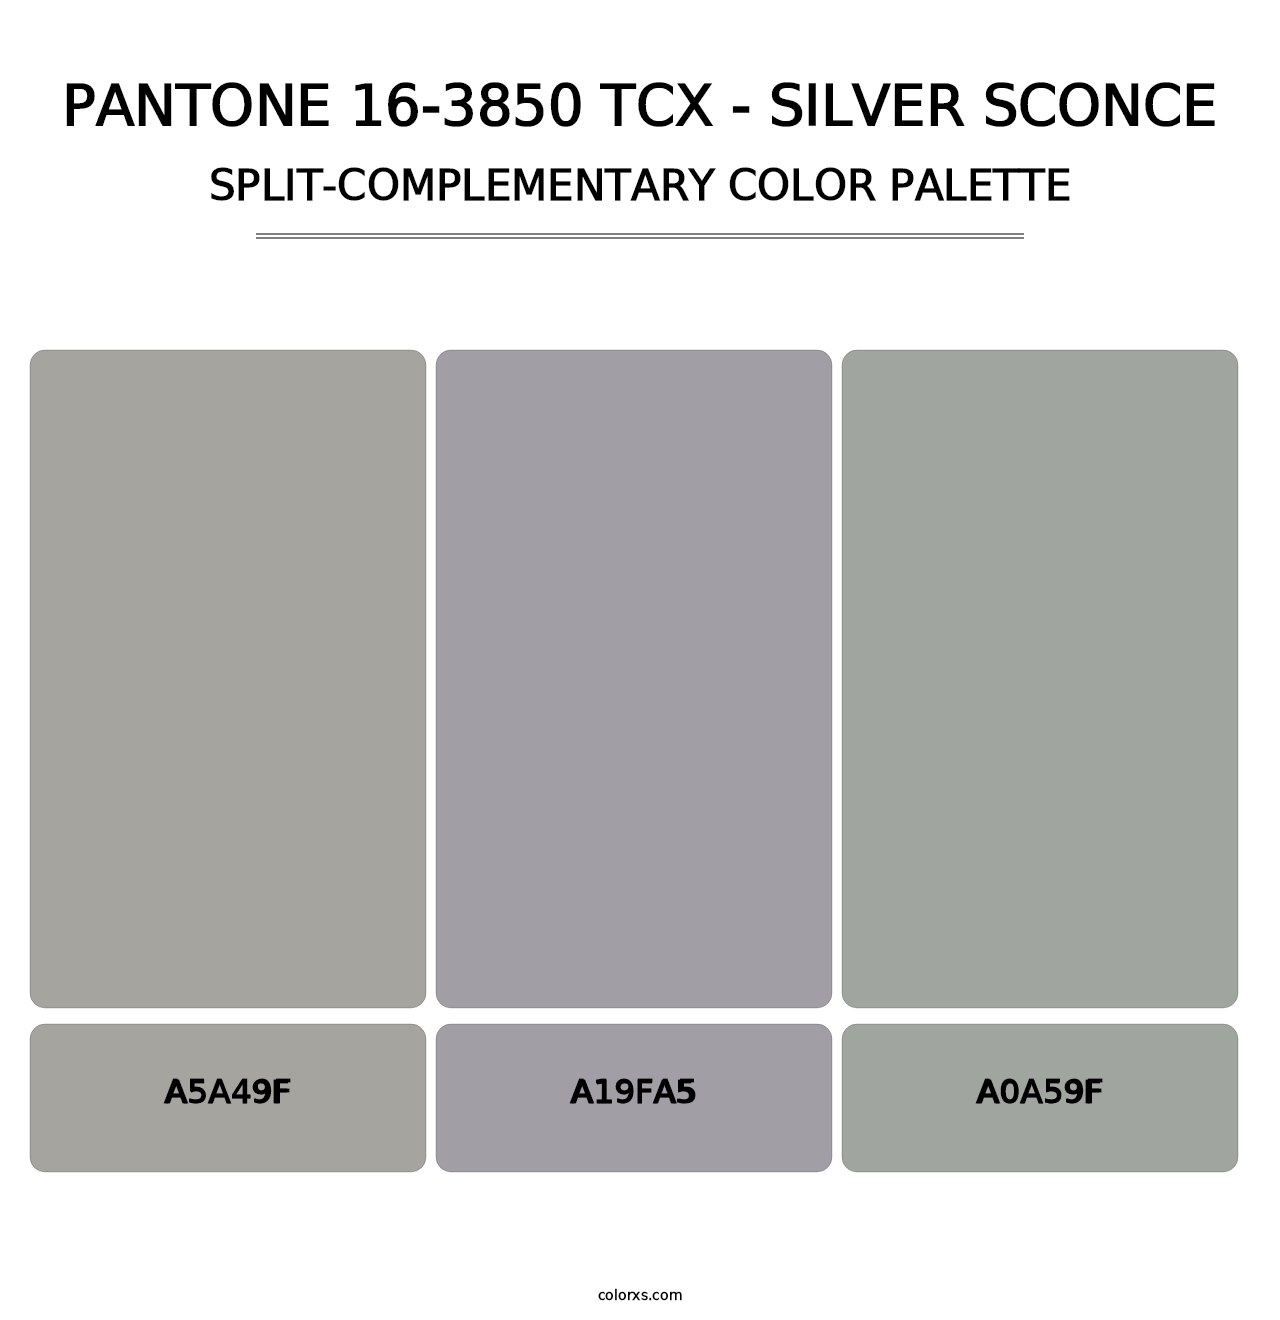 PANTONE 16-3850 TCX - Silver Sconce - Split-Complementary Color Palette